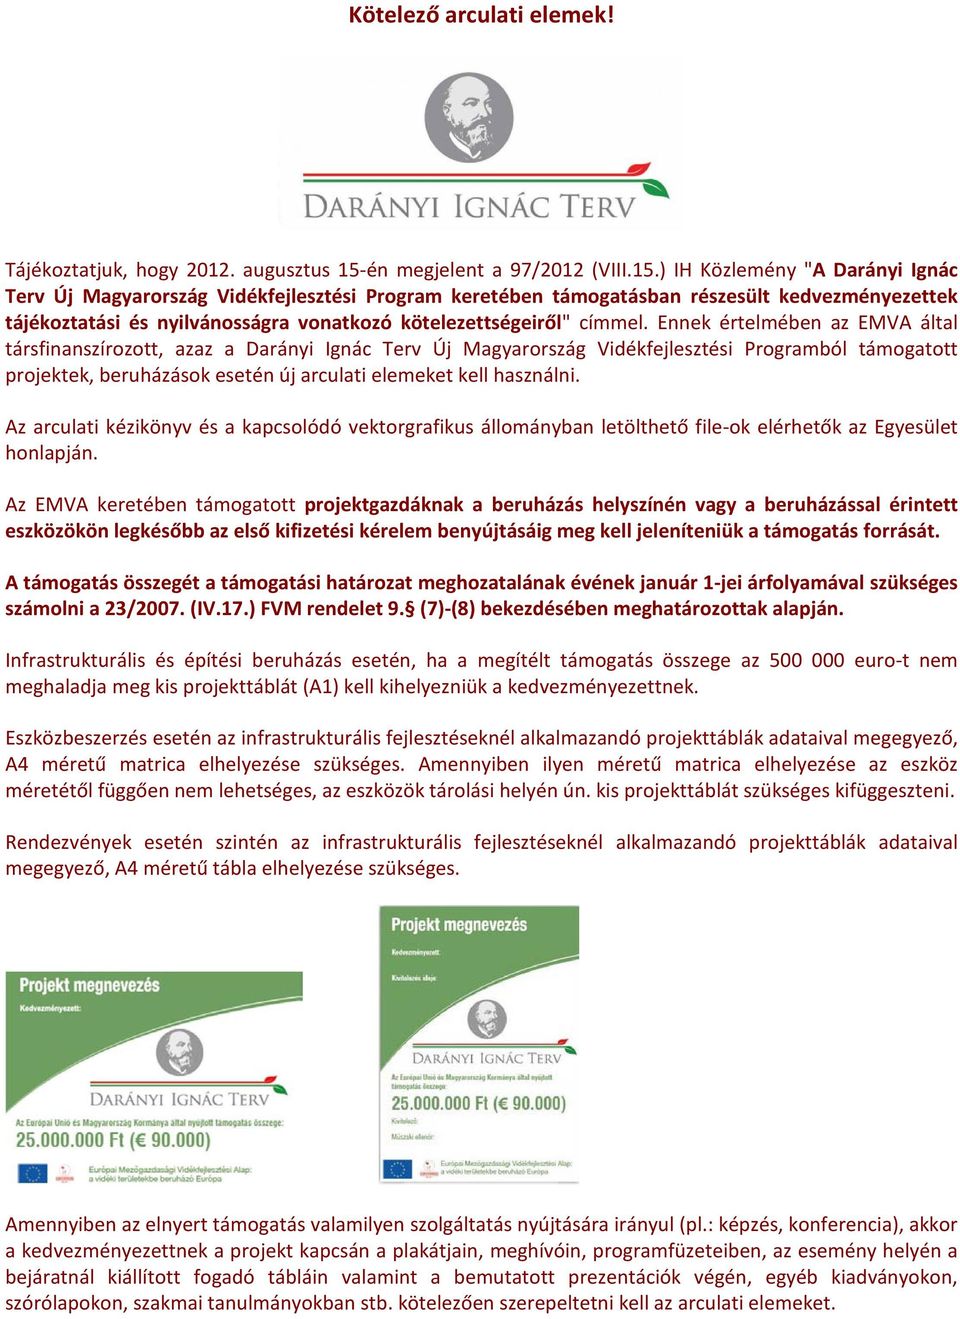 ) IH Közlemény "A Darányi Ignác Terv Új Magyarország Vidékfejlesztési Program keretében támogatásban részesült kedvezményezettek tájékoztatási és nyilvánosságra vonatkozó kötelezettségeiről" címmel.